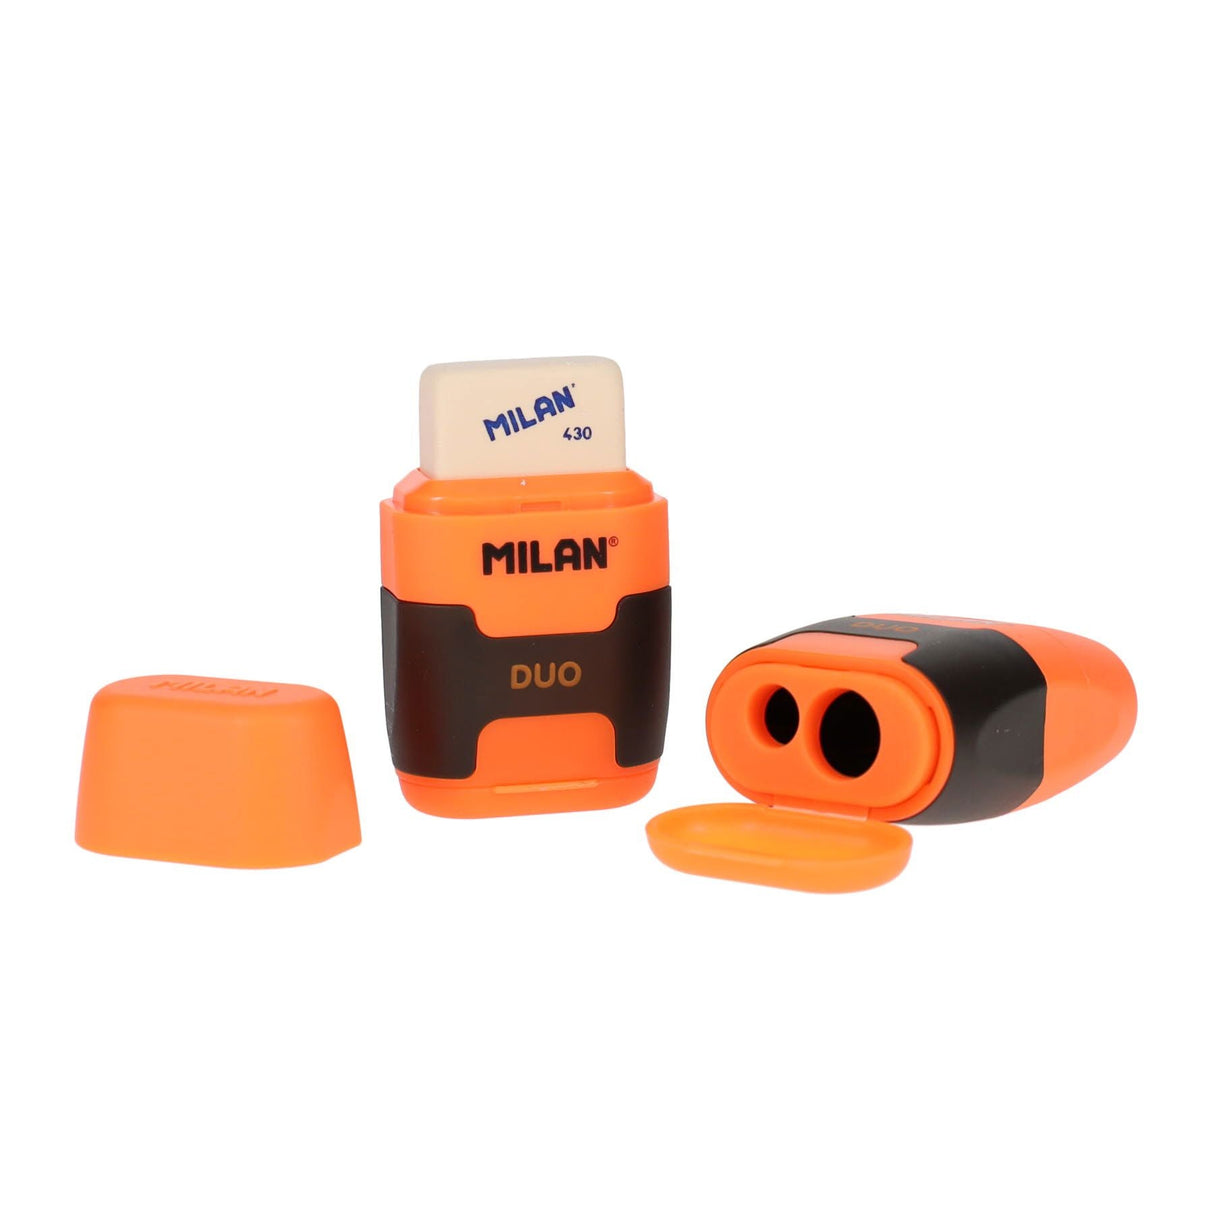 Milan Compact Touch Duo Eraser & Sharpener - Orange | Stationery Shop UK